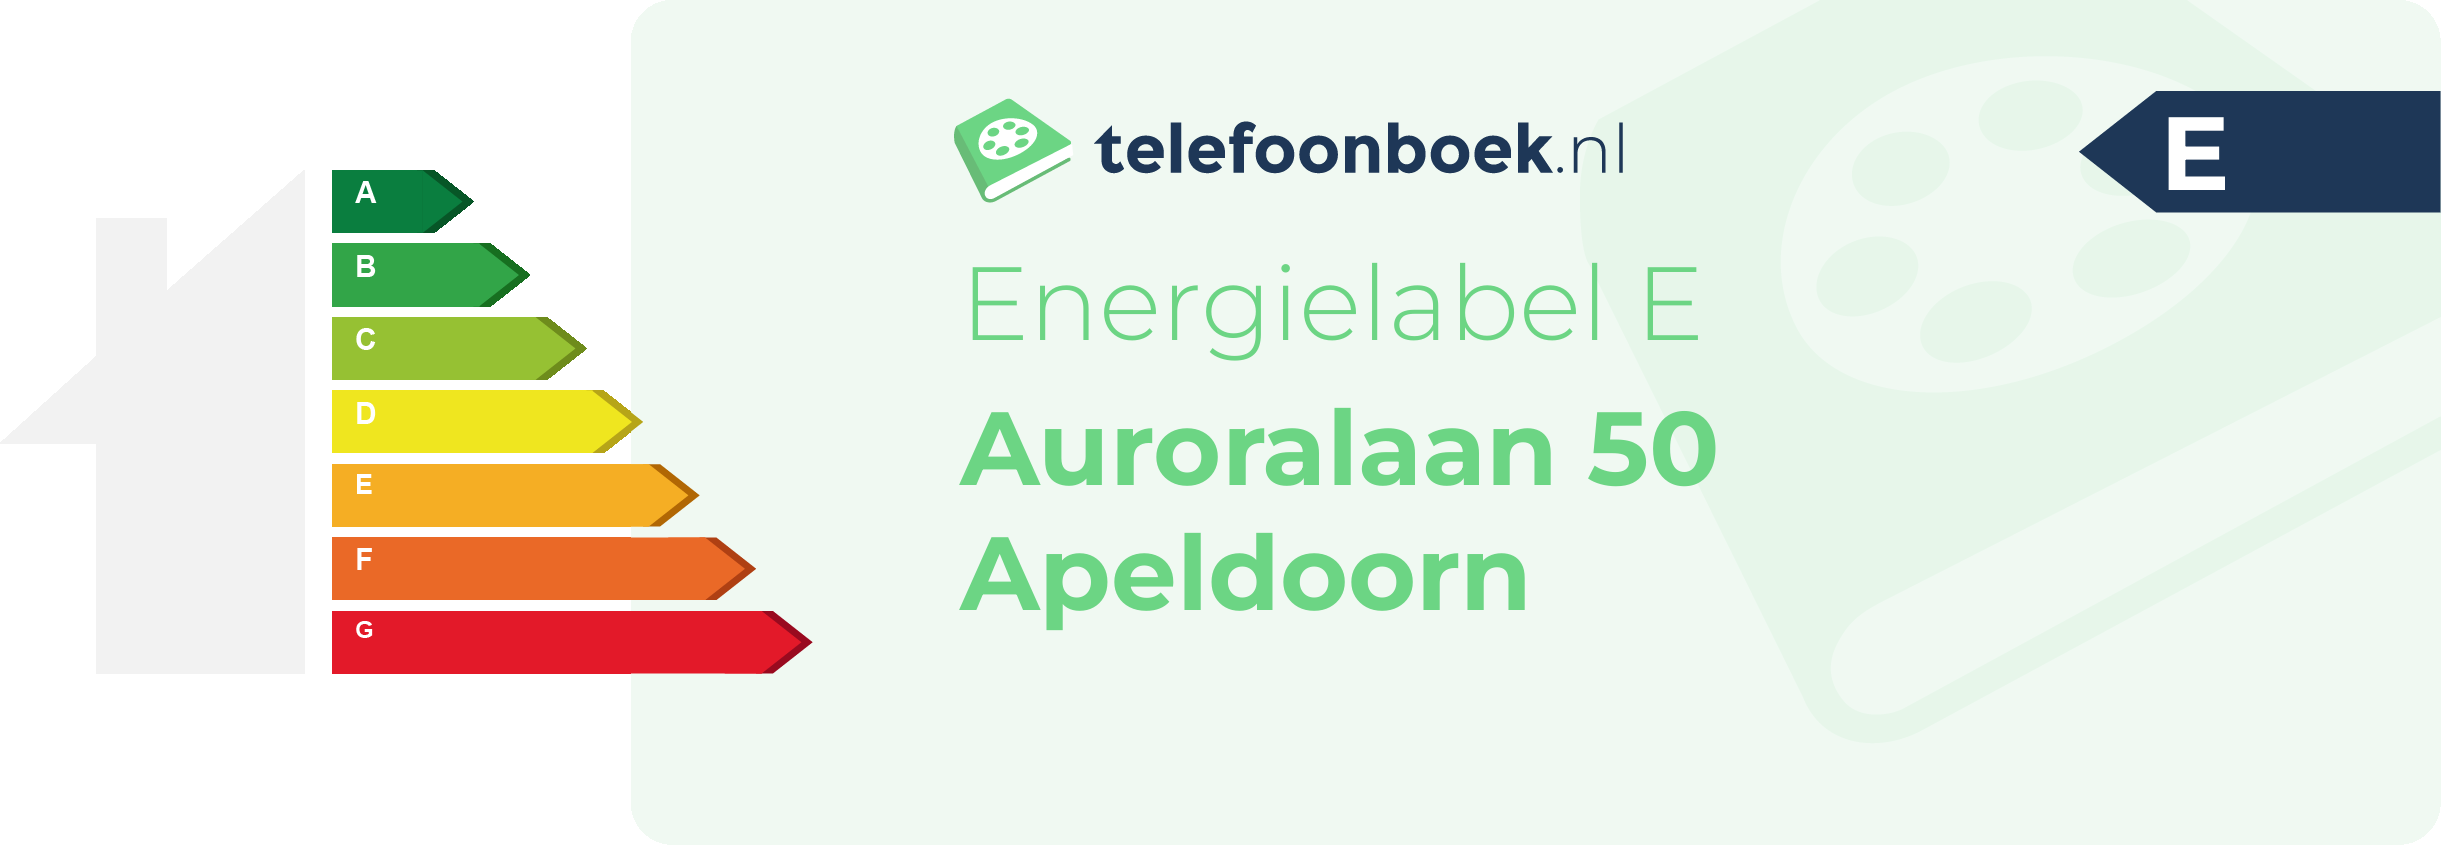 Energielabel Auroralaan 50 Apeldoorn